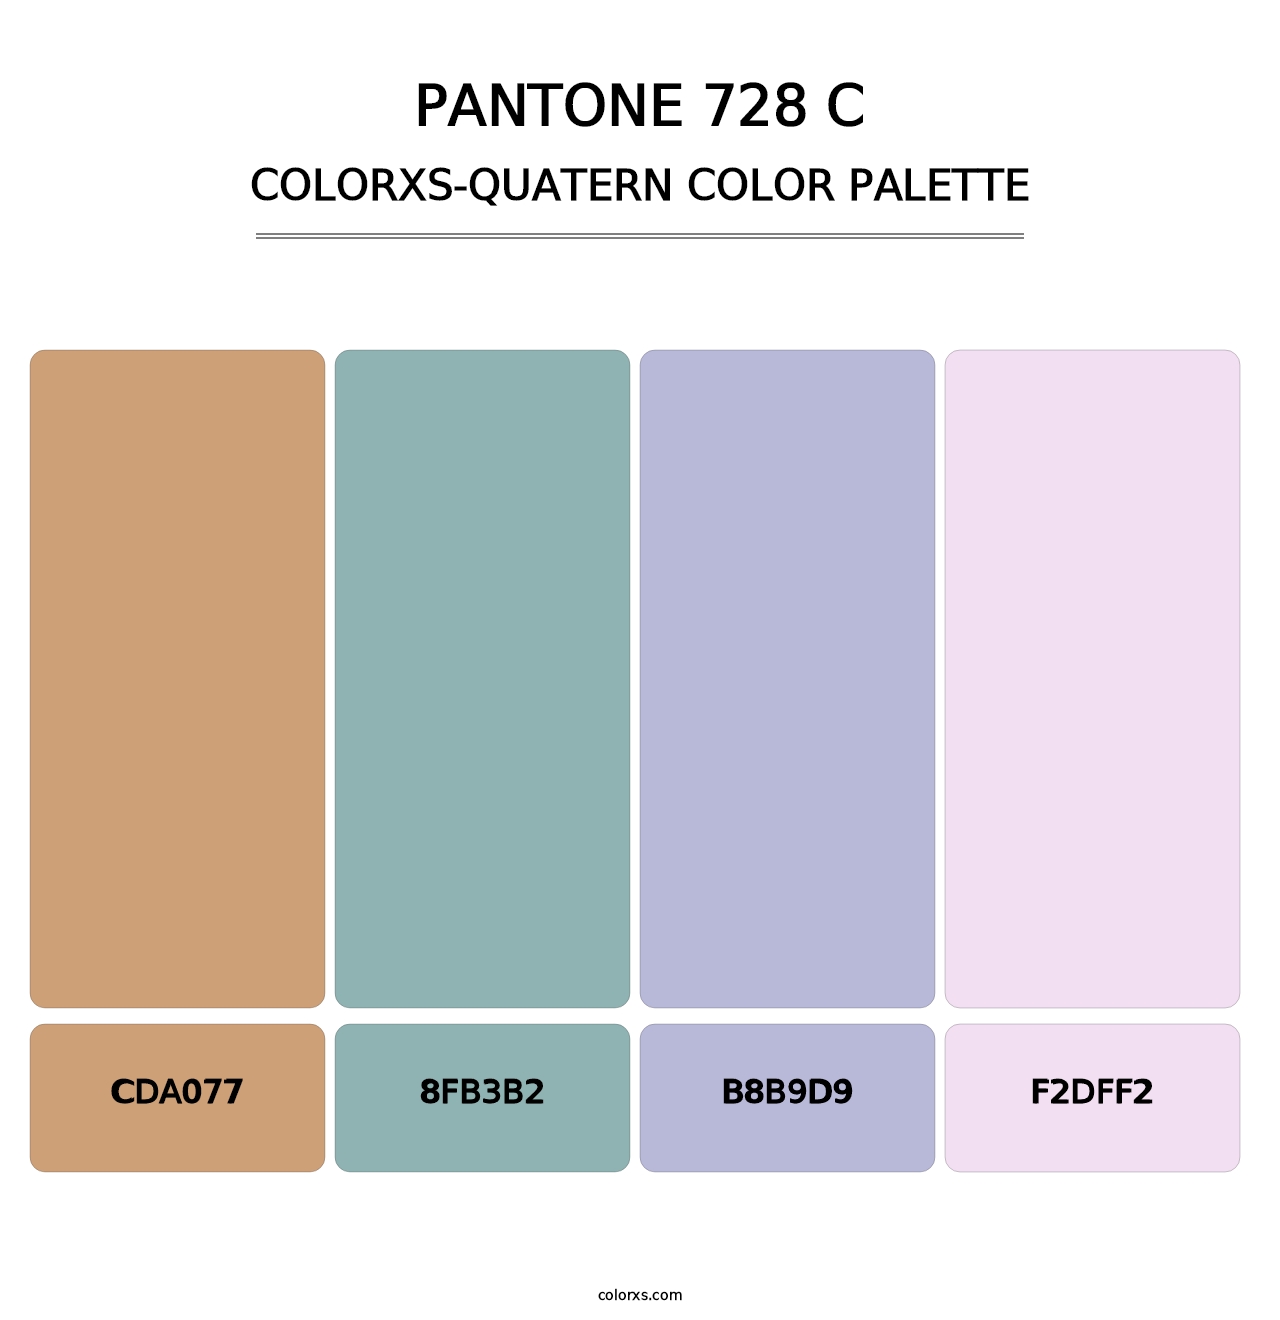 PANTONE 728 C - Colorxs Quatern Palette